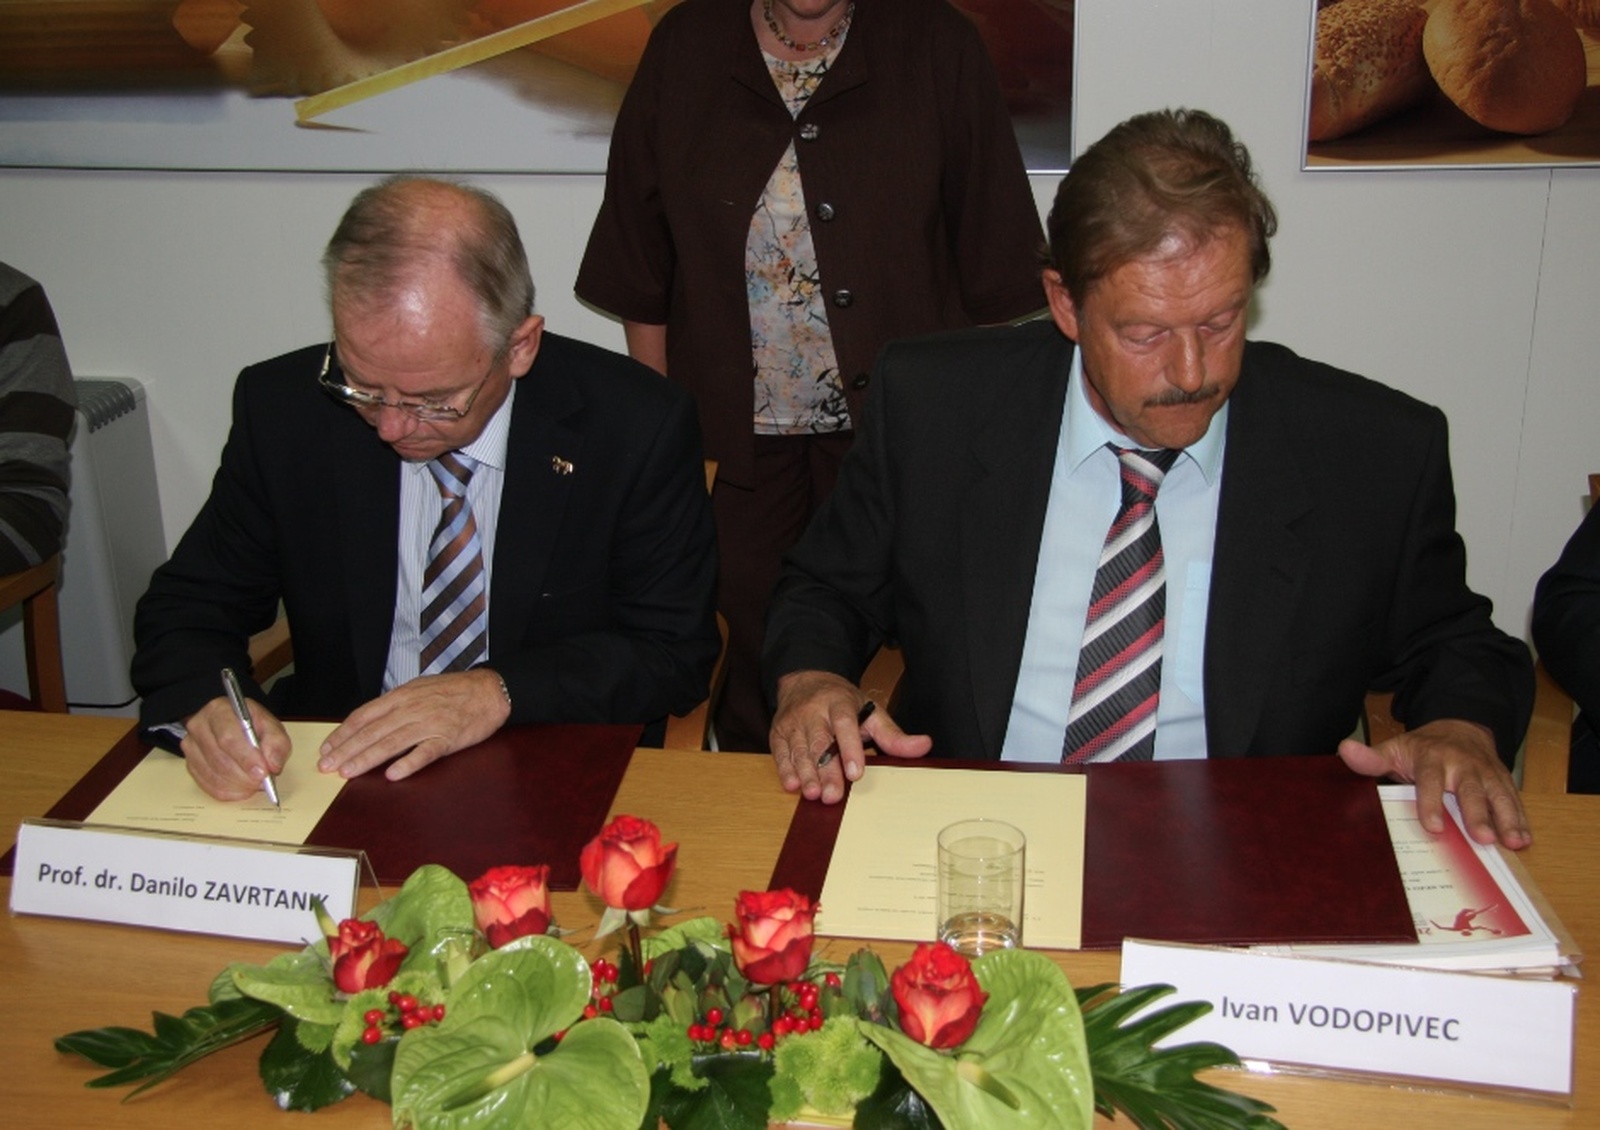 ŽRK Mlinotest Ajdovščina in Univerza v Novi Gorici podpisali pogodbo o sodelovanju